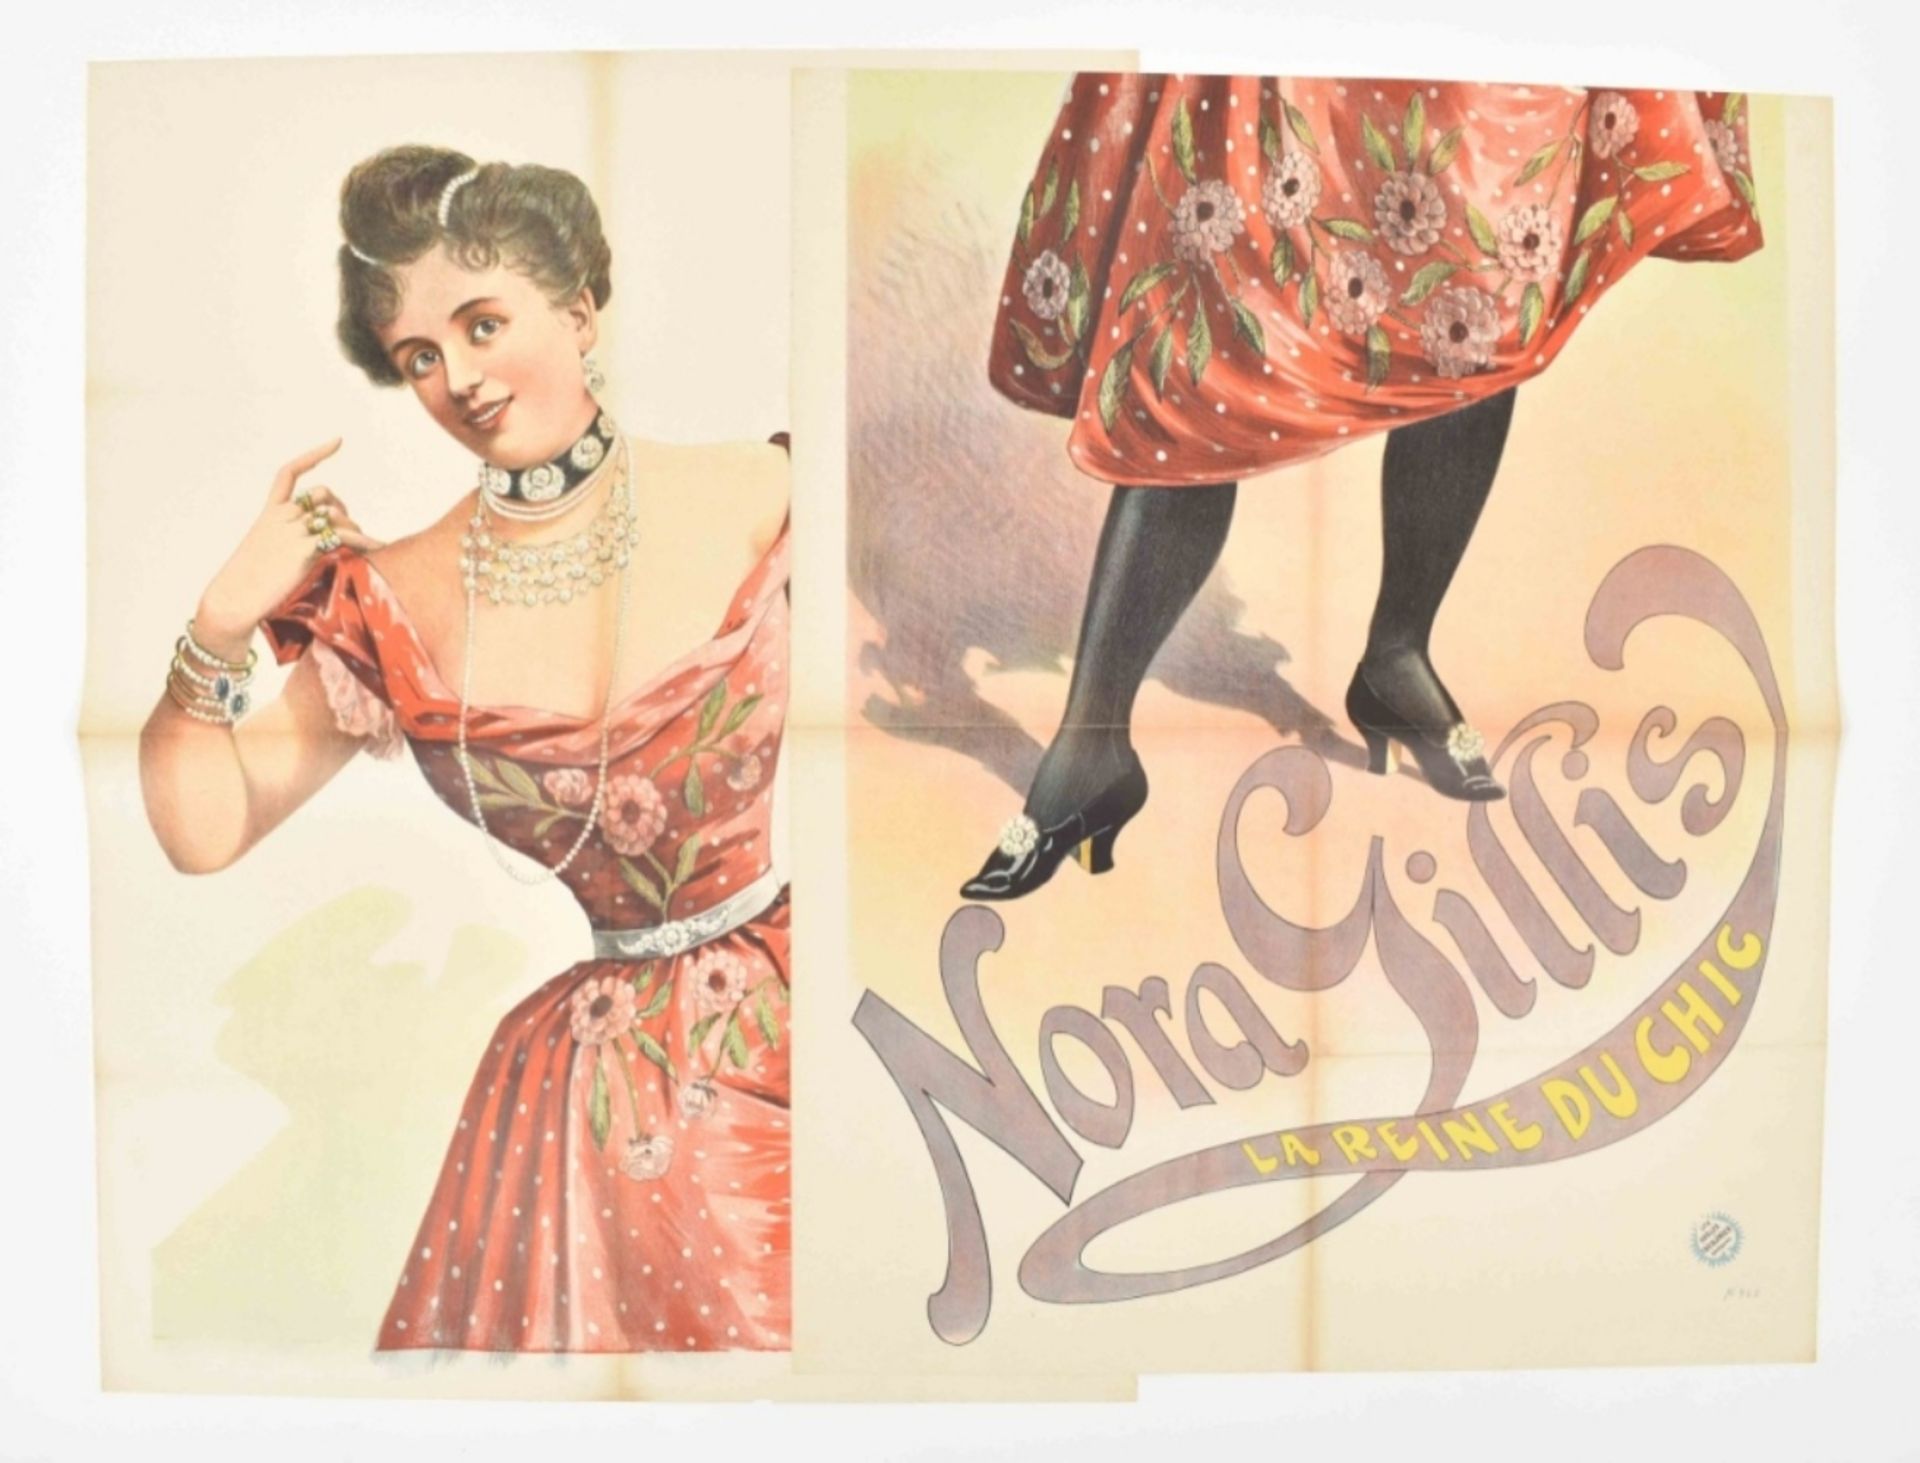 [Entertainment] Nora Gillis. La reine du chic Friedländer, Hamburg, 1891 - Bild 2 aus 6